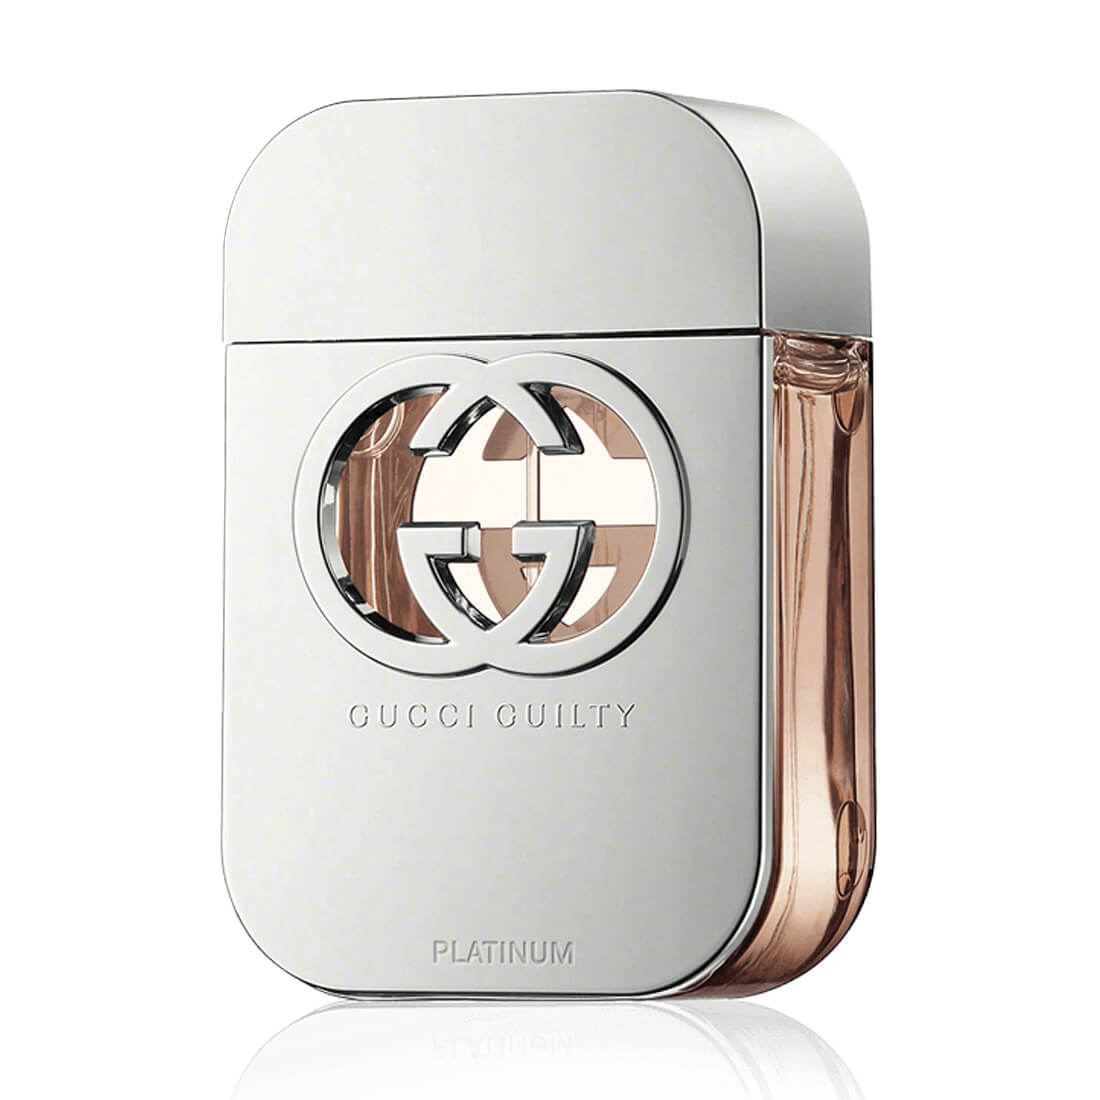 Gucci Guilty Platinum Edition Eau De Toilette For Women